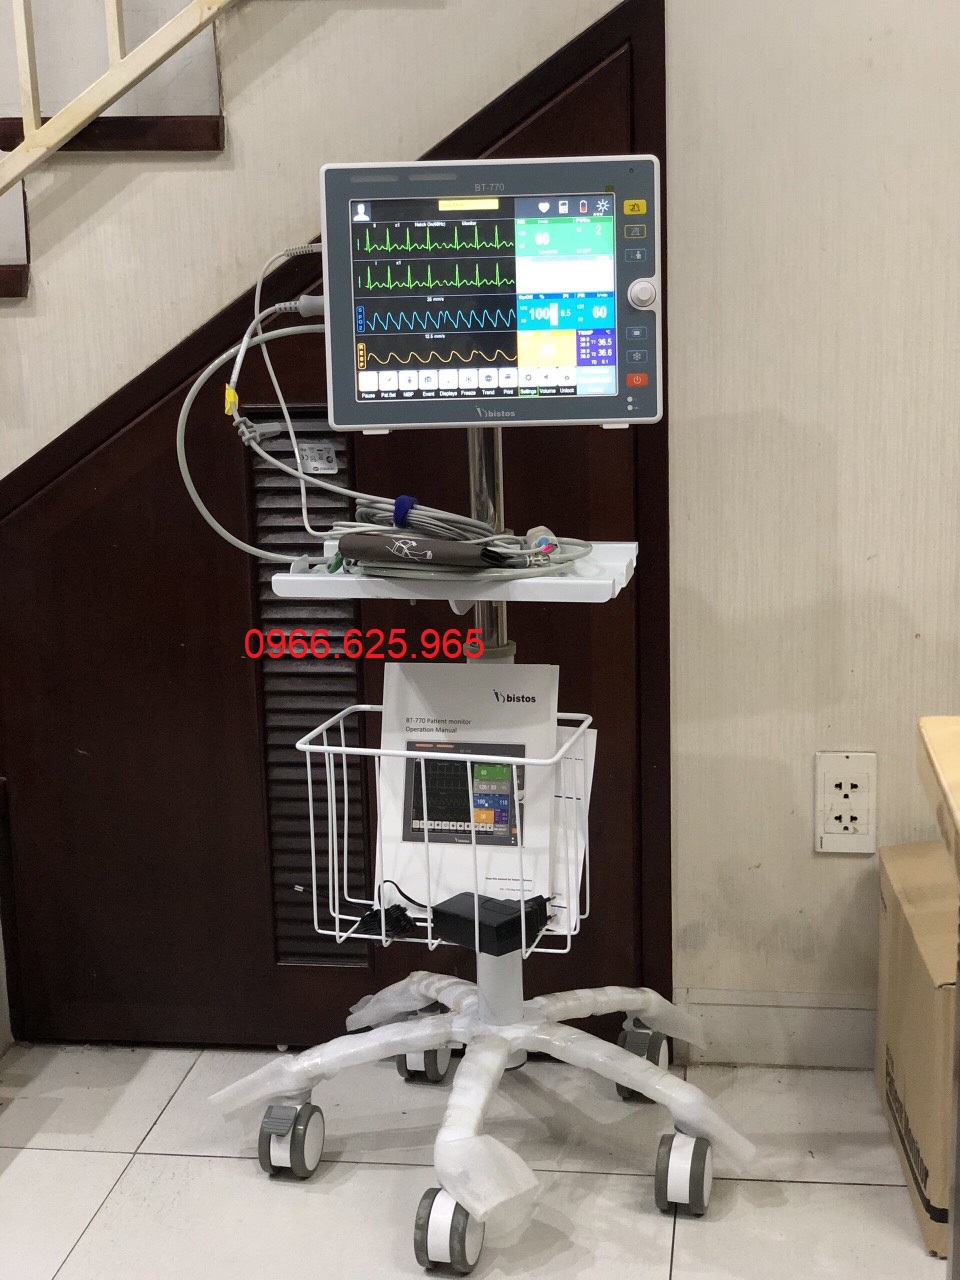 Máy monitor theo dõi bệnh nhân Bistos BT-770